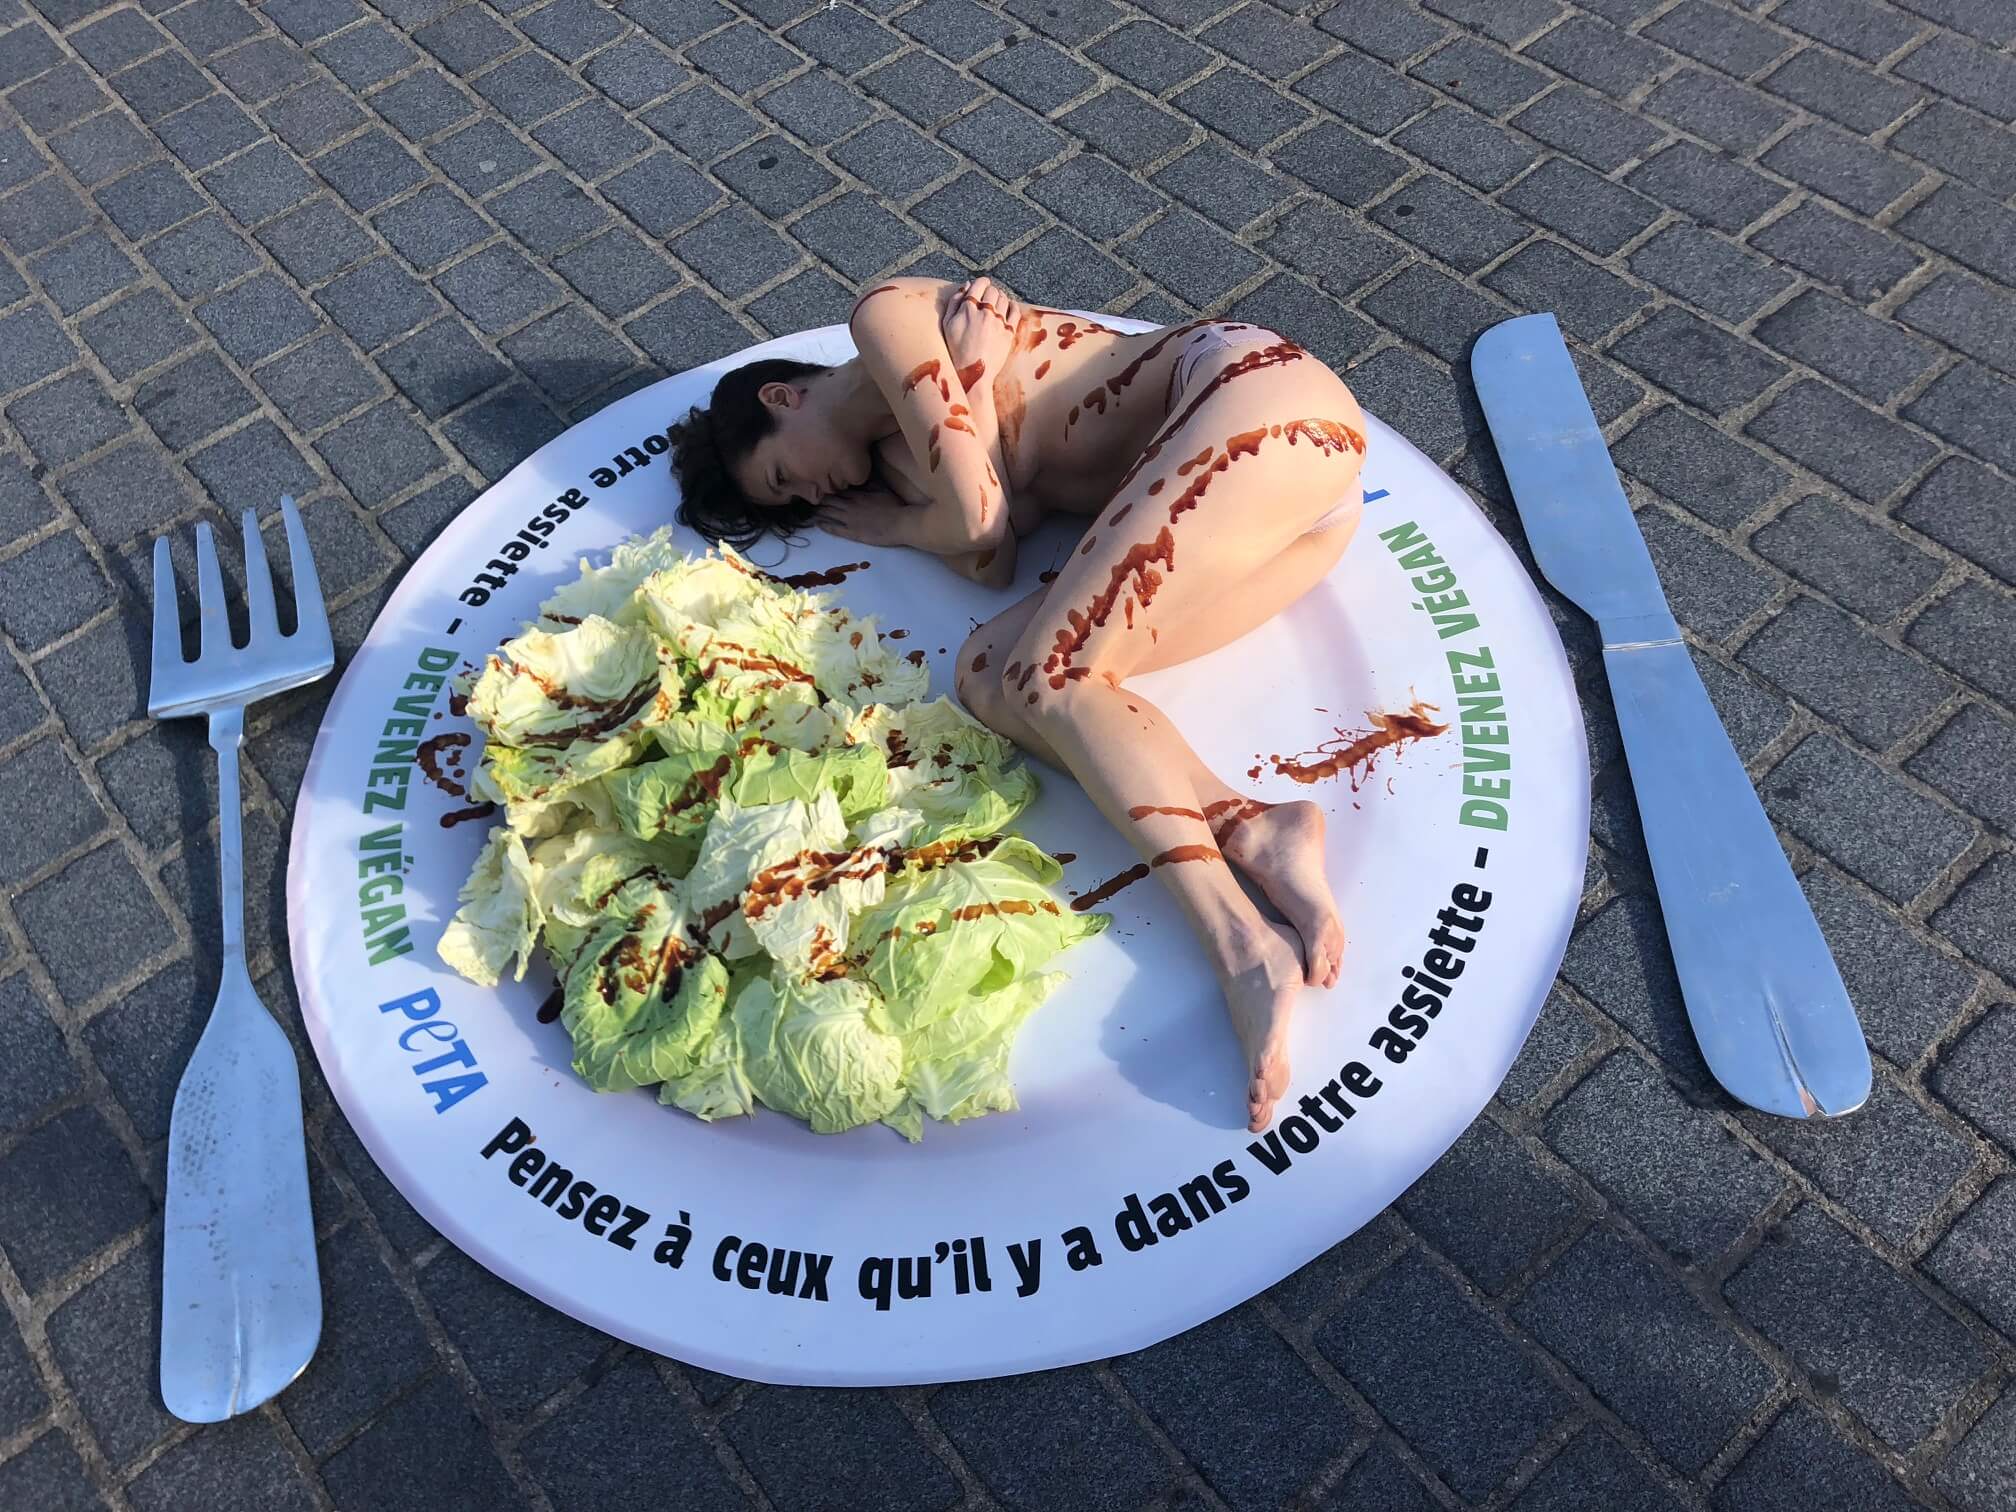 Journée mondiale végane : une jeune femme presque nue « servie » dans une assiette